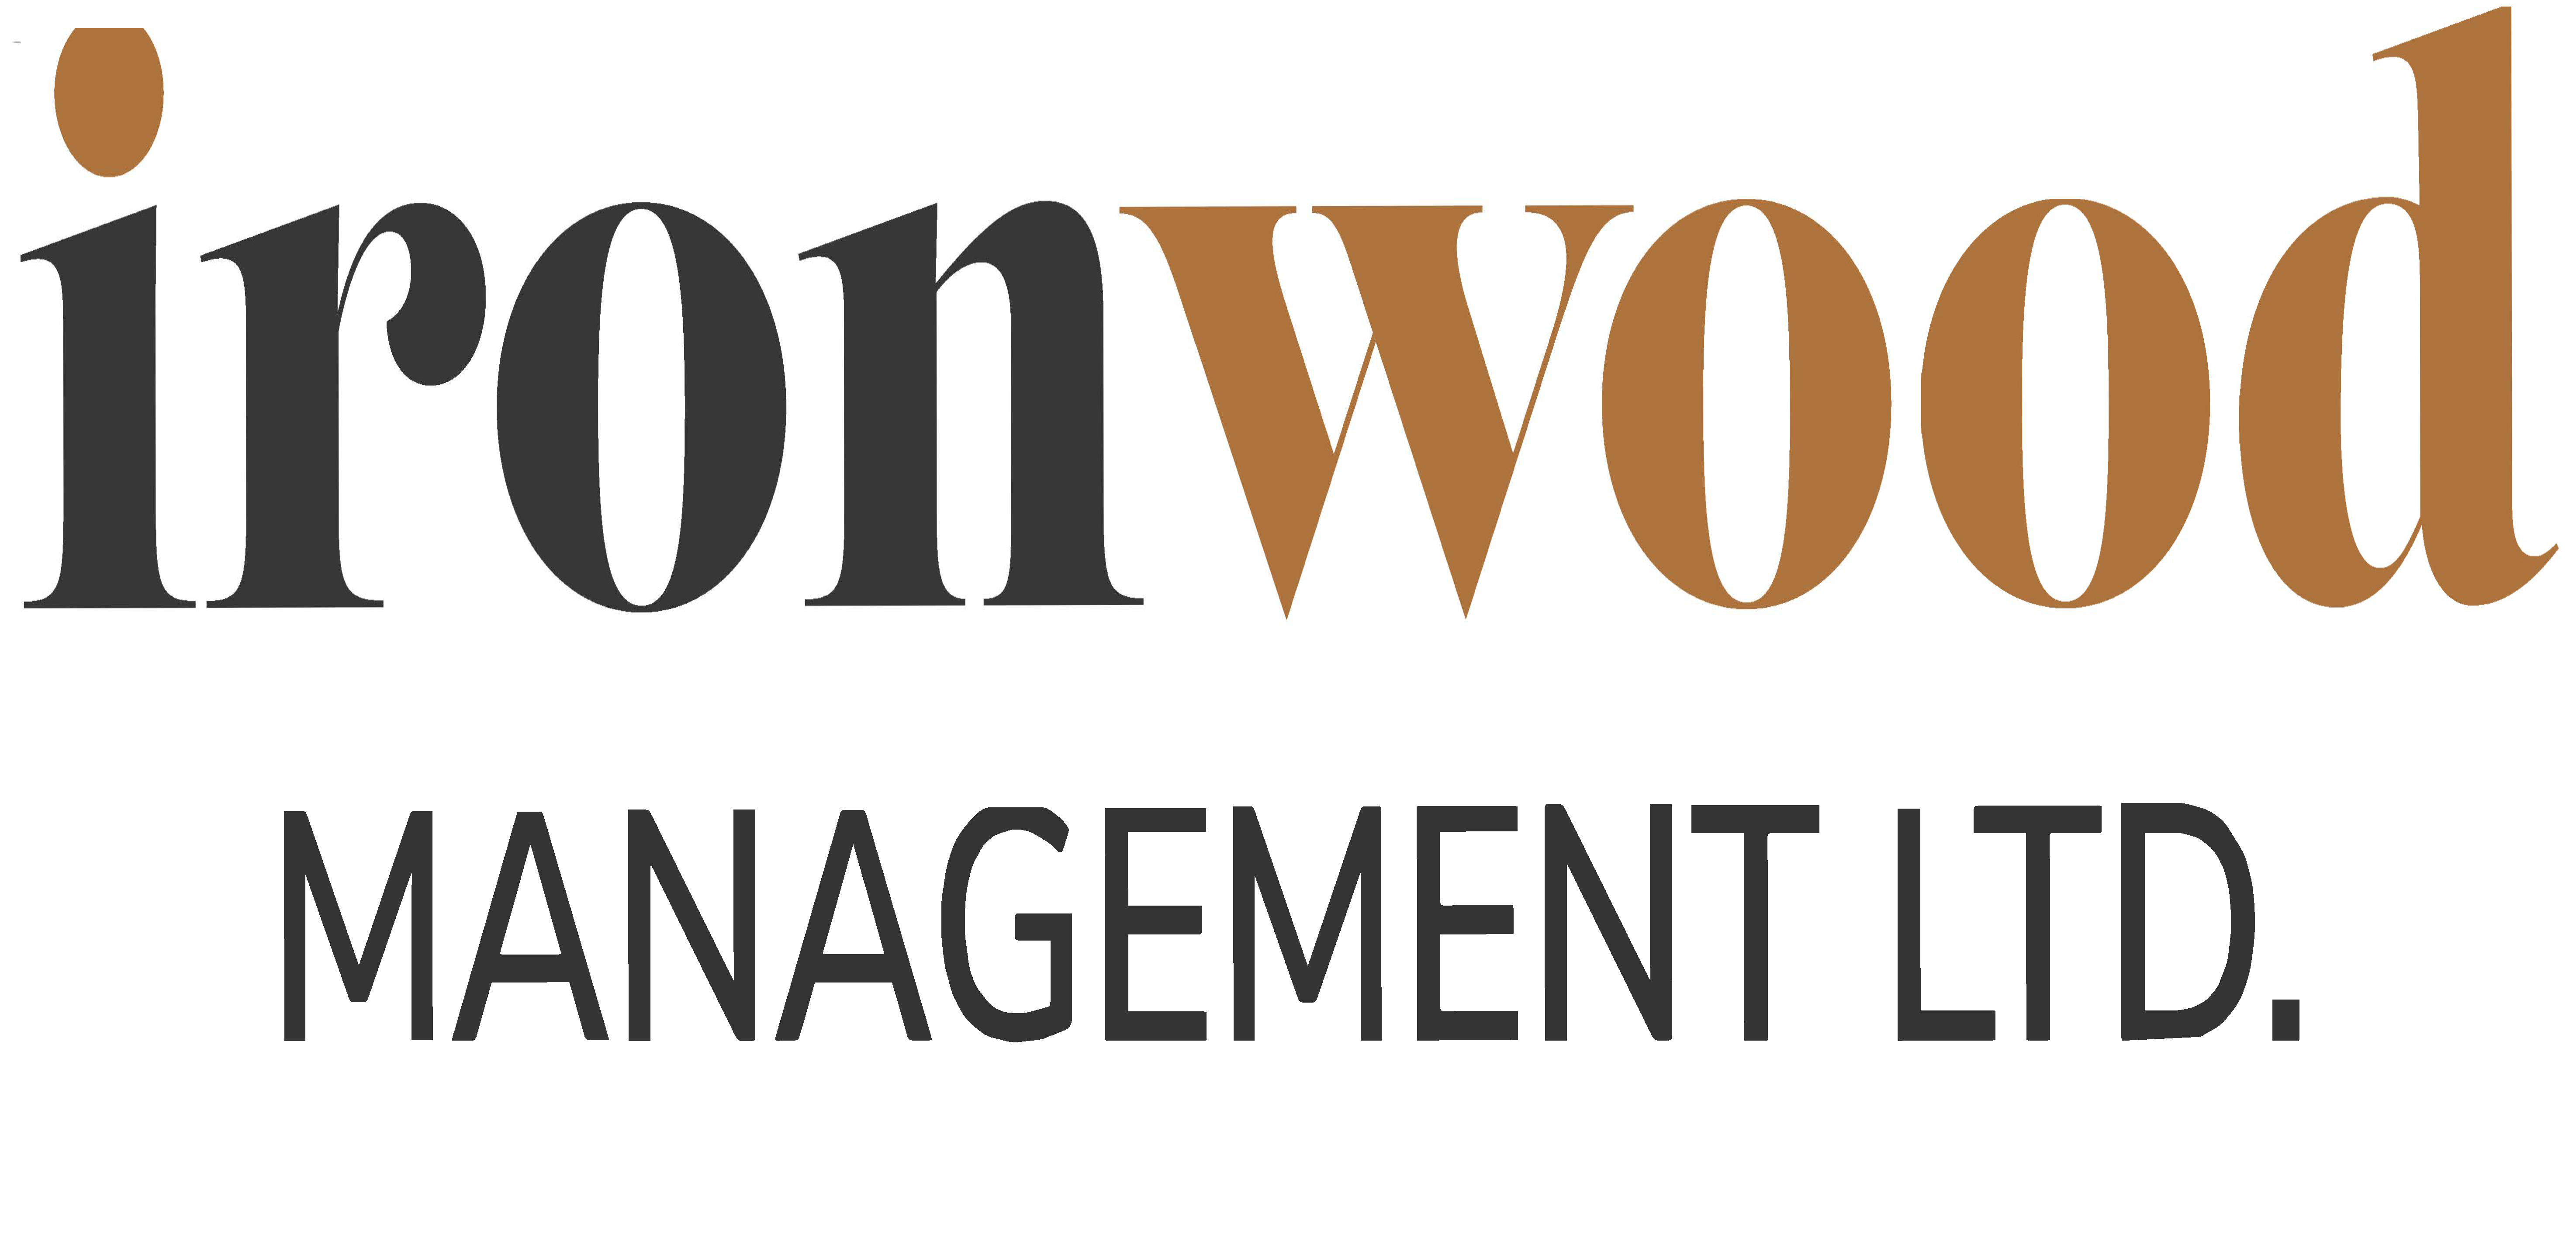 Ironwood-Management-Ltd-Logo-CMYK Revised